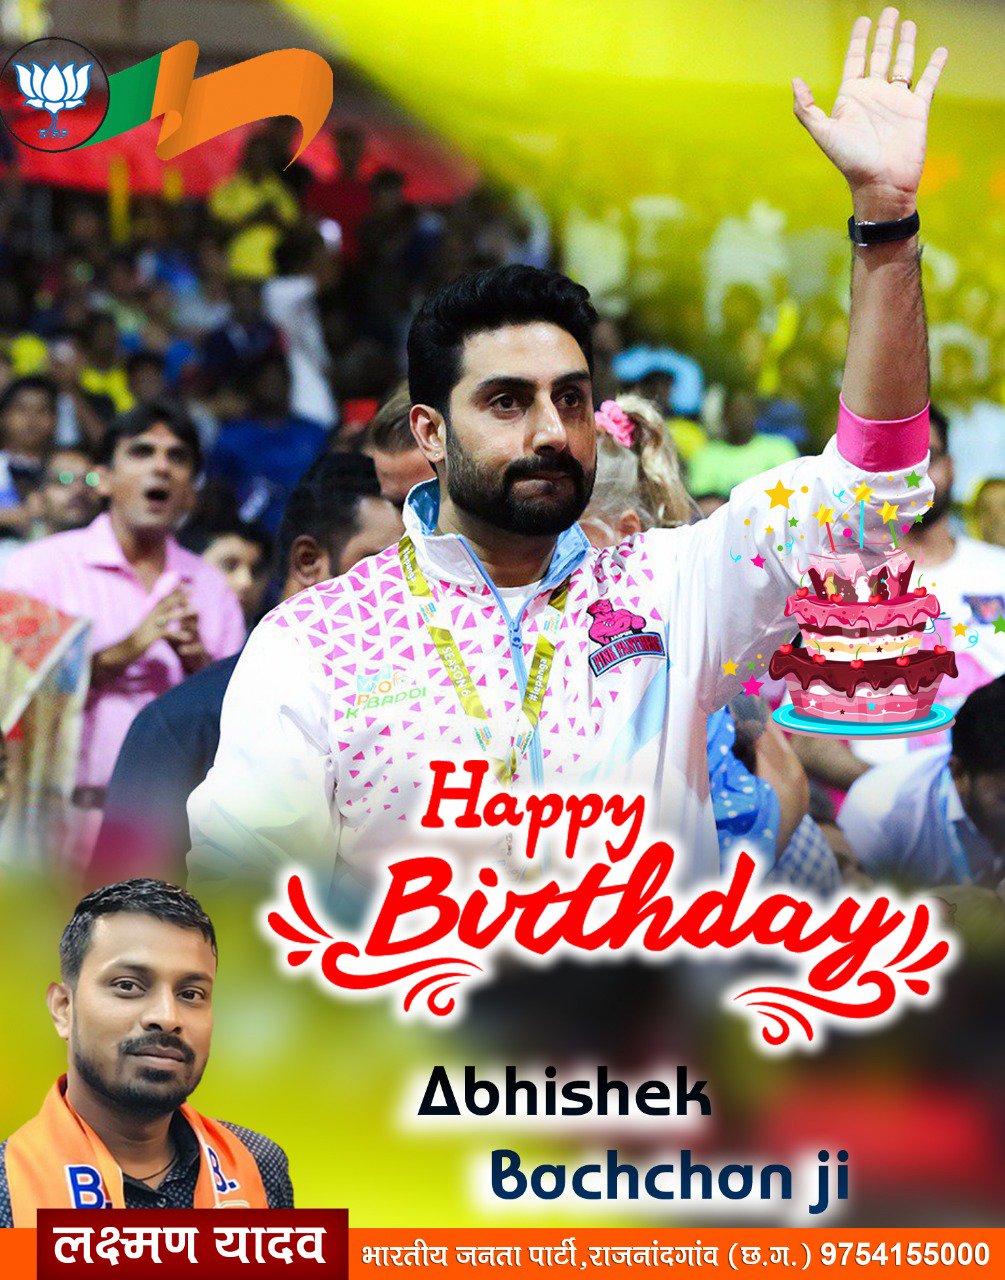  Happy birthday abhishek bachchan ji 